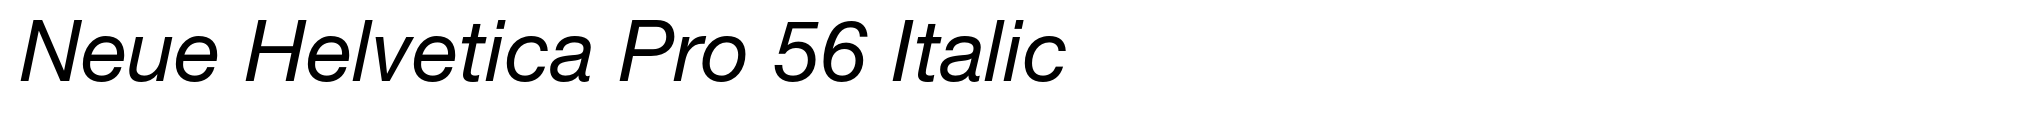 Neue Helvetica Pro 56 Italic image